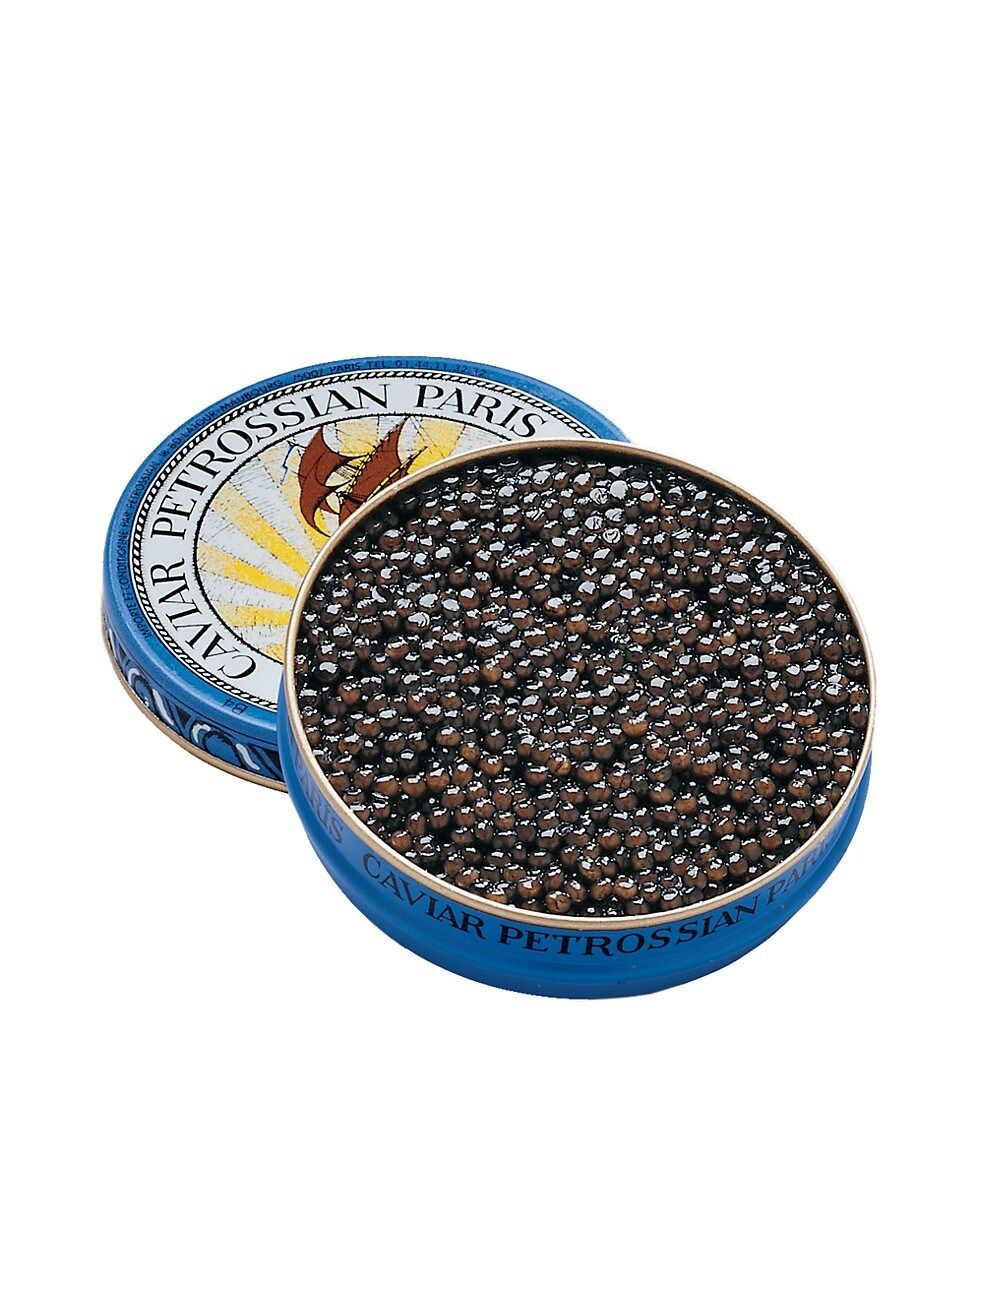 Petrossian Royal Alverta Caviar | Saks Fifth Avenue